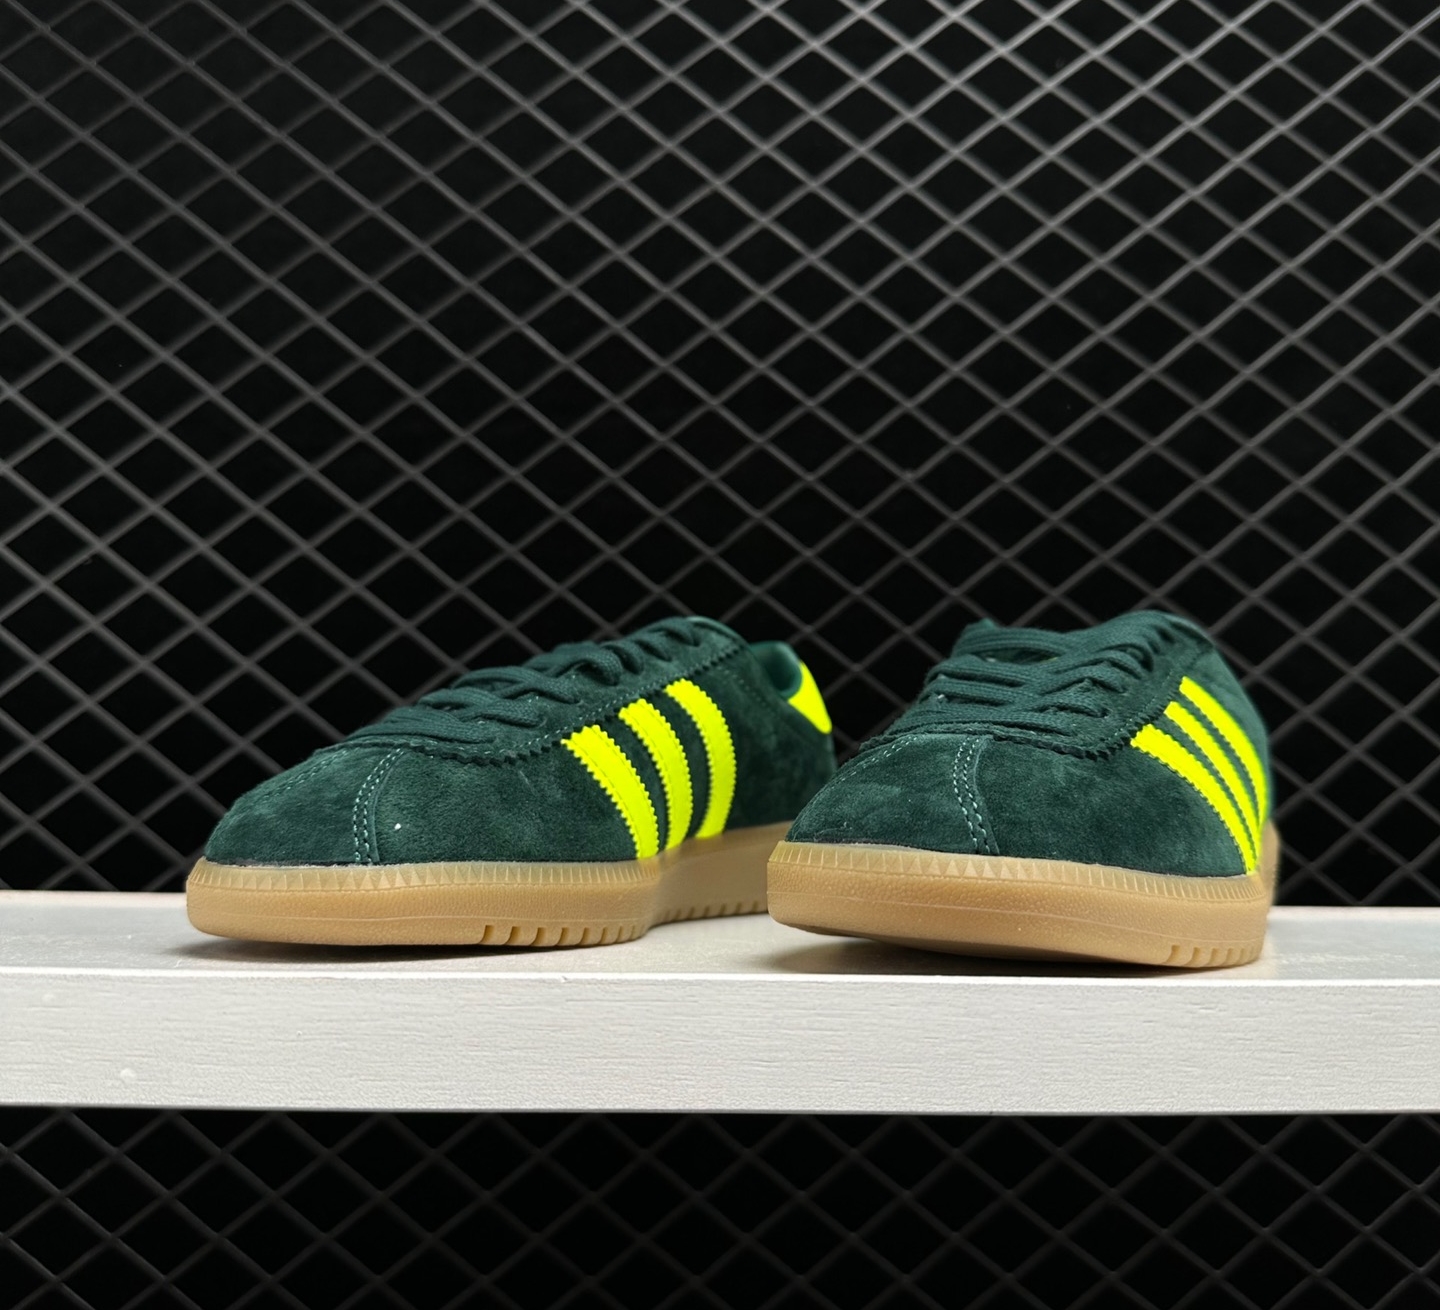 Adidas Originals Bermuda Collegiate Green Shock Yellow Gum B41472 - Trendy Athletic Sneakers for Men